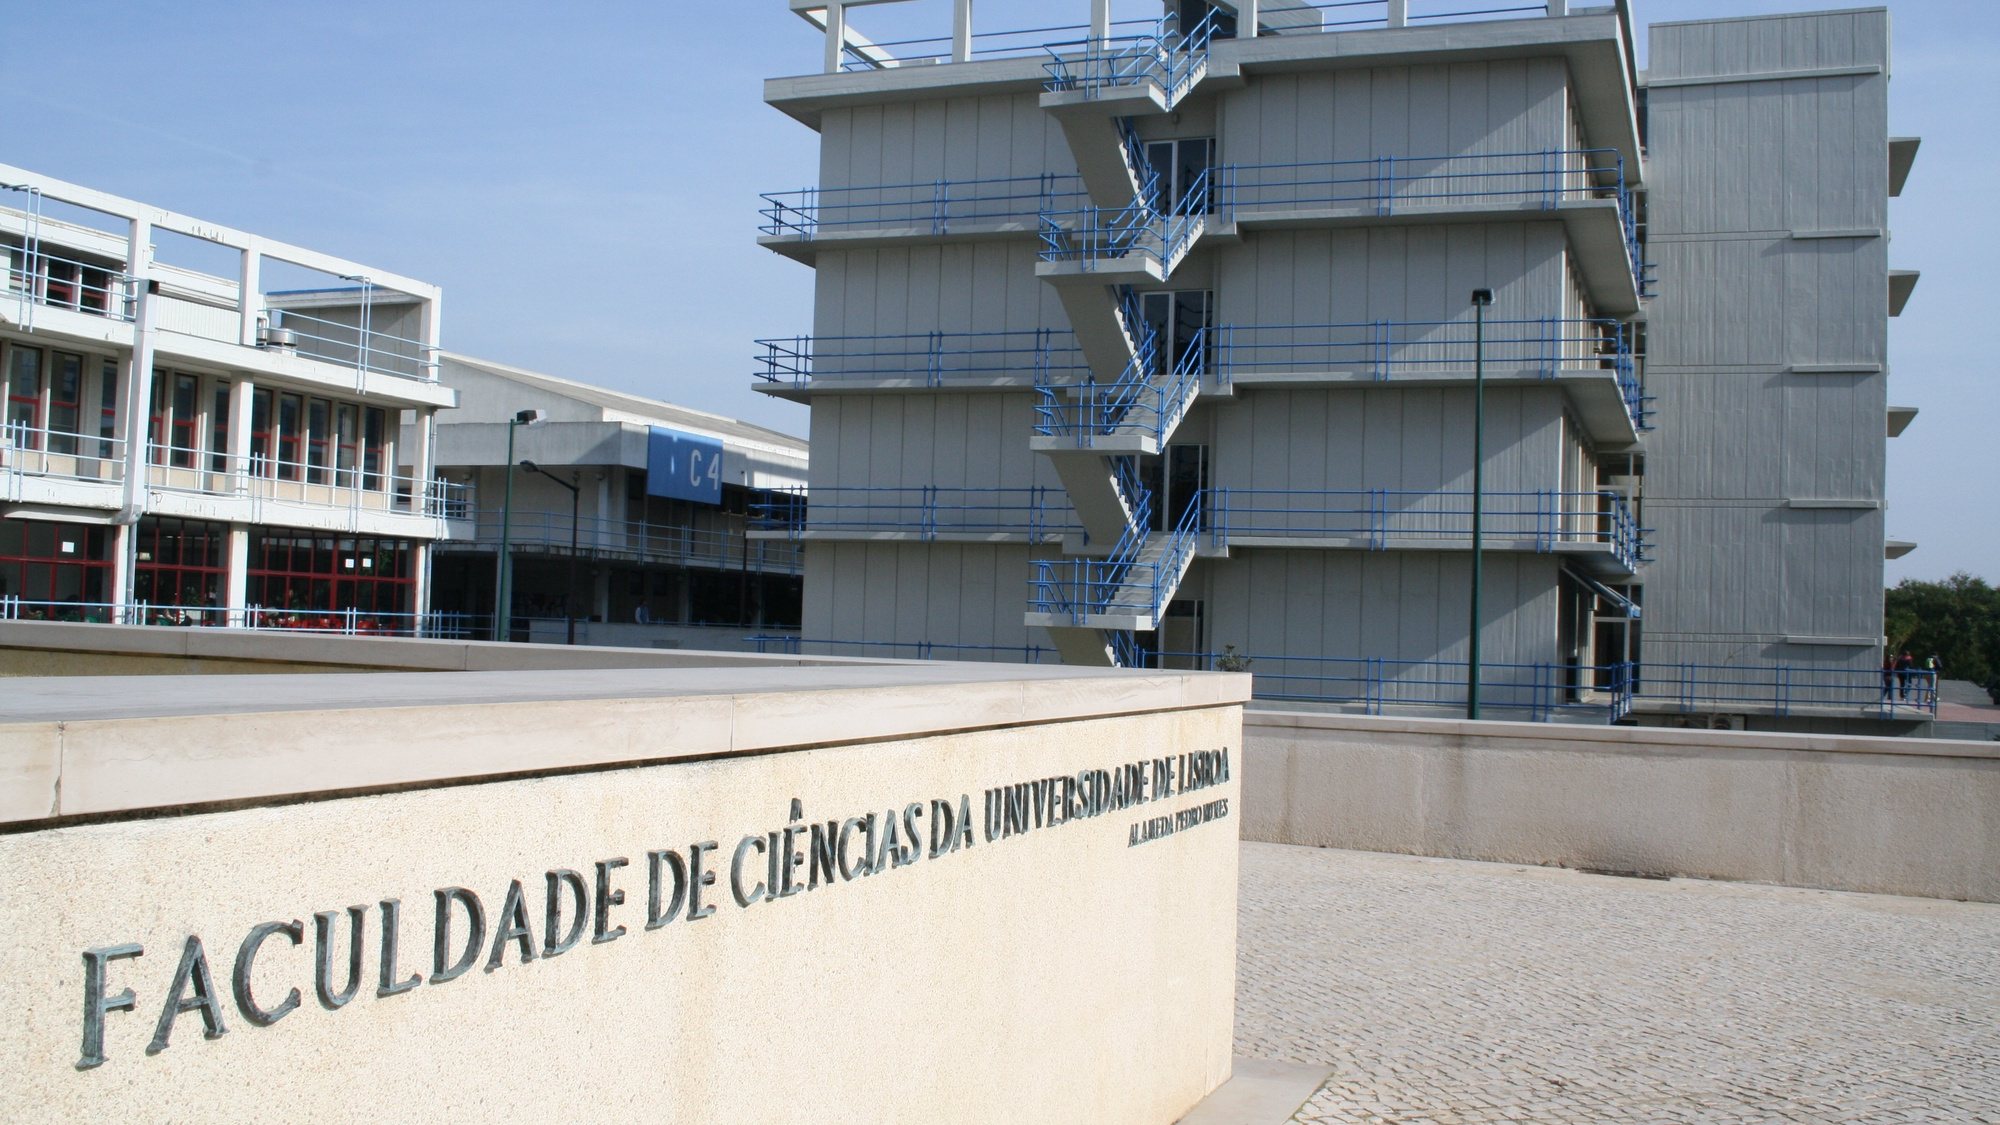 Faculdade de Ciências da Universidade de Lisboa a 21 de Janeiro de 2008.MAFALDA LEITAO / LUSA